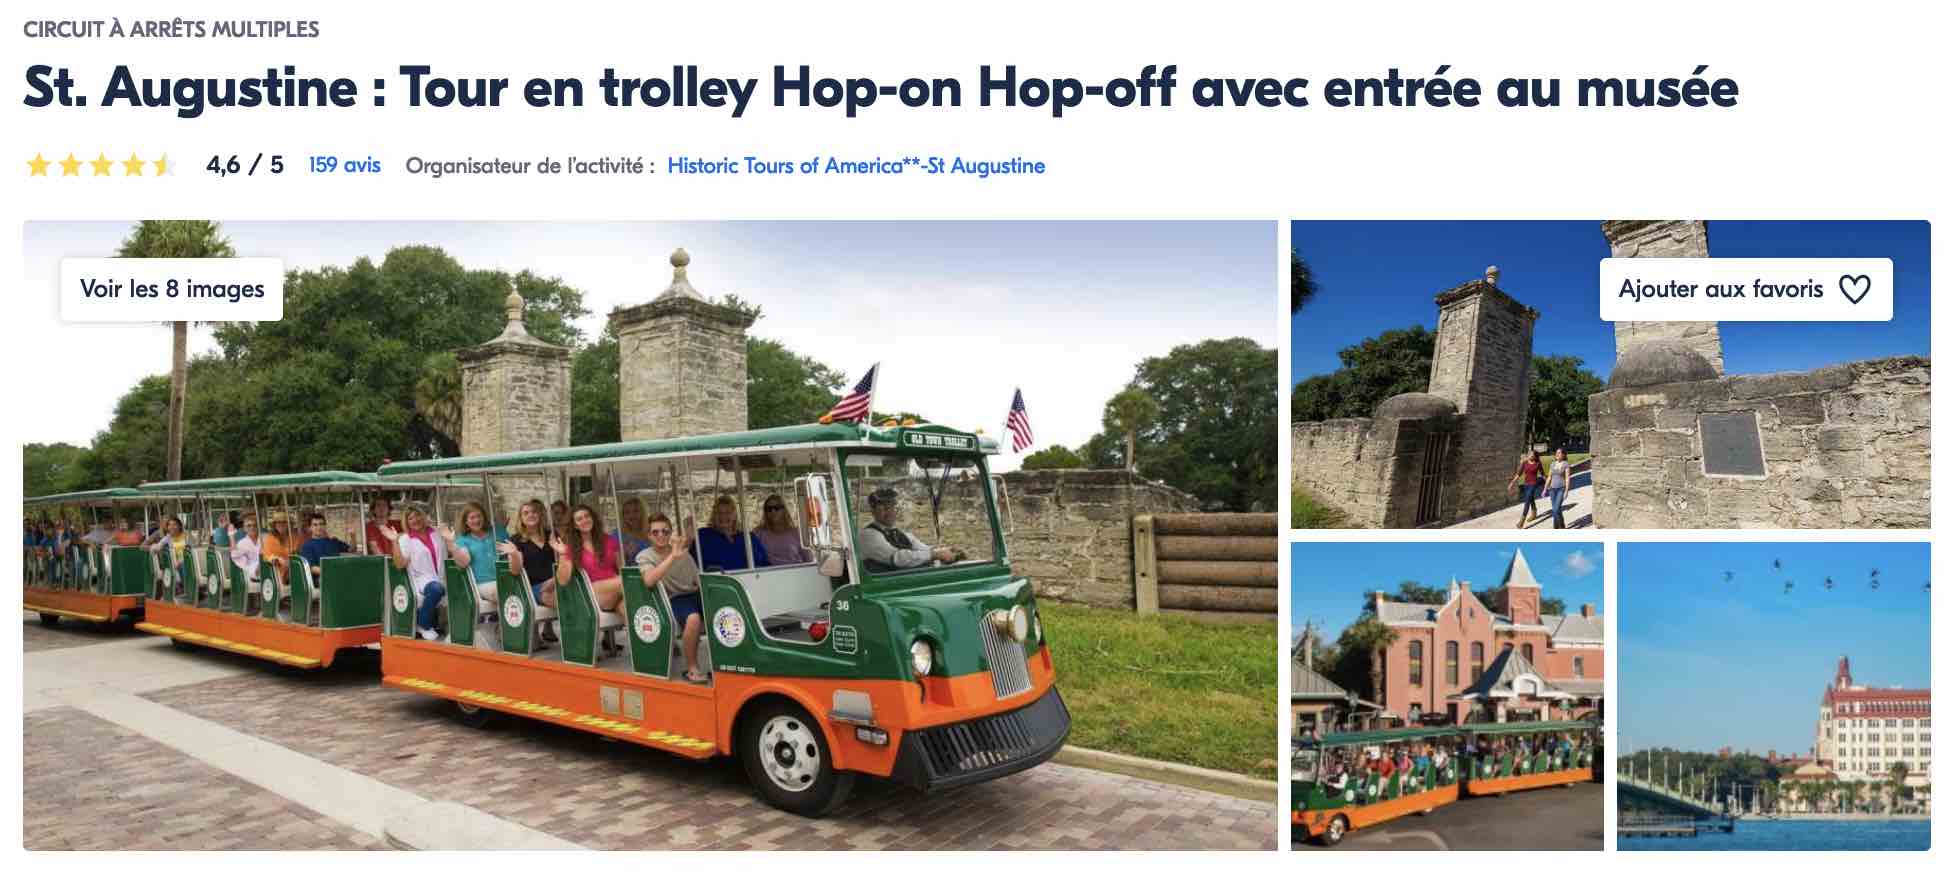 activite-saint-augustine-floride-tour-en-trolley